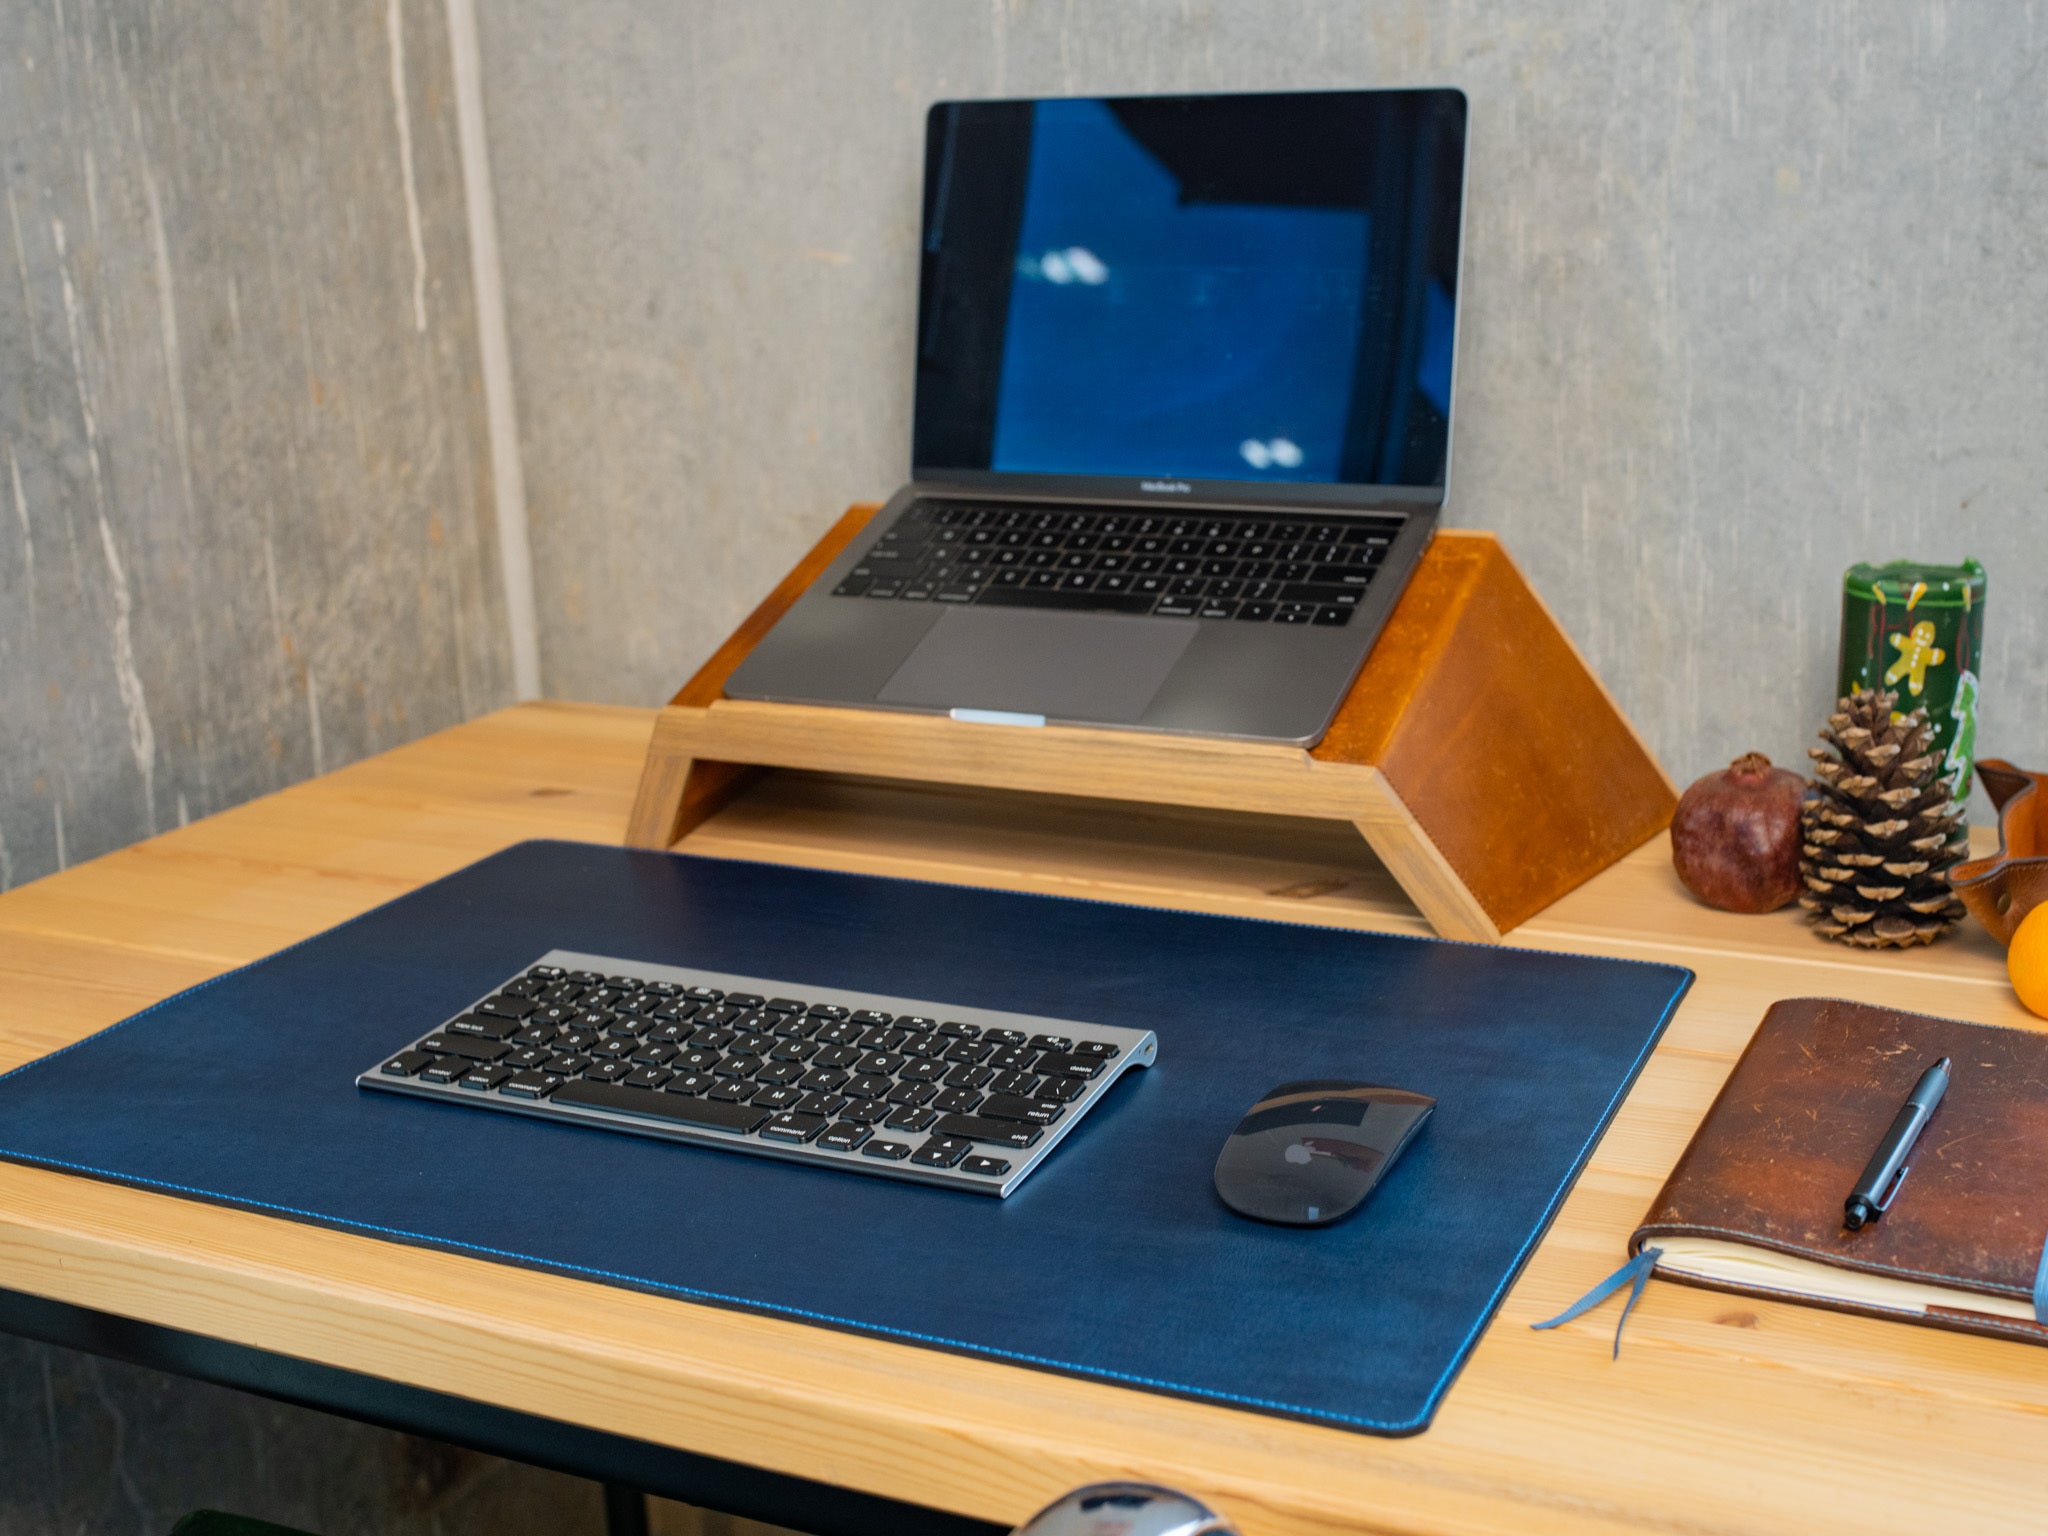 Why Should I Use a Desk Mat? – The Desk Mat